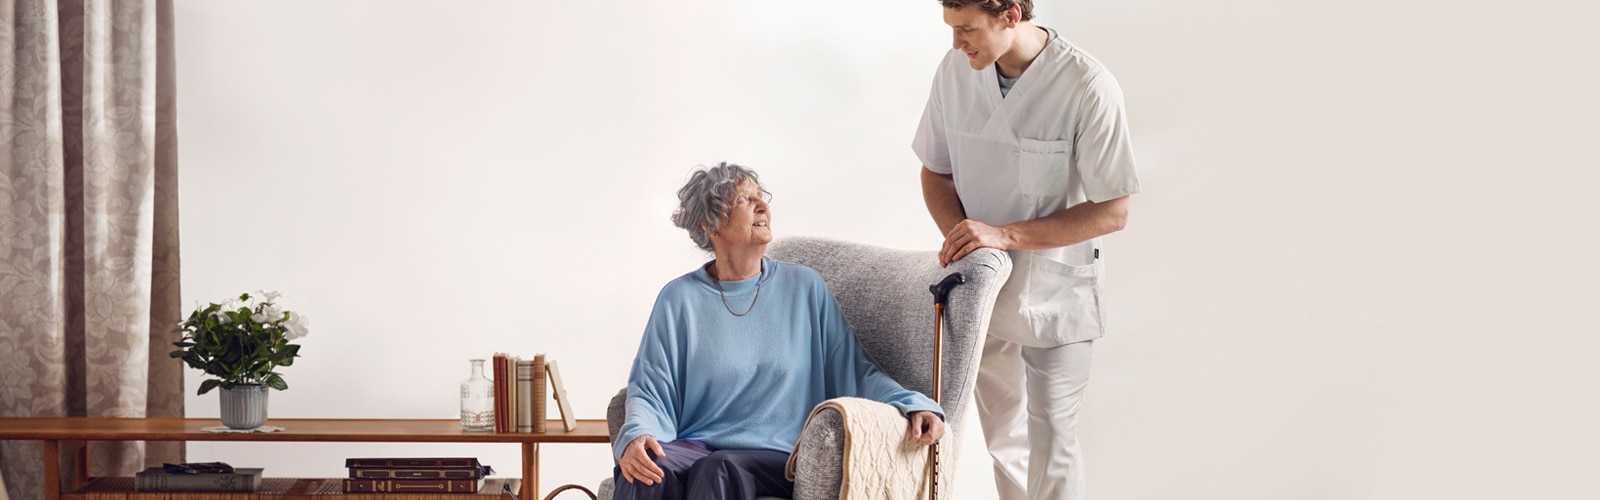 En siddende ældre beboer taler med en stående professionel omsorgsperson i et plejehjemsmiljø 